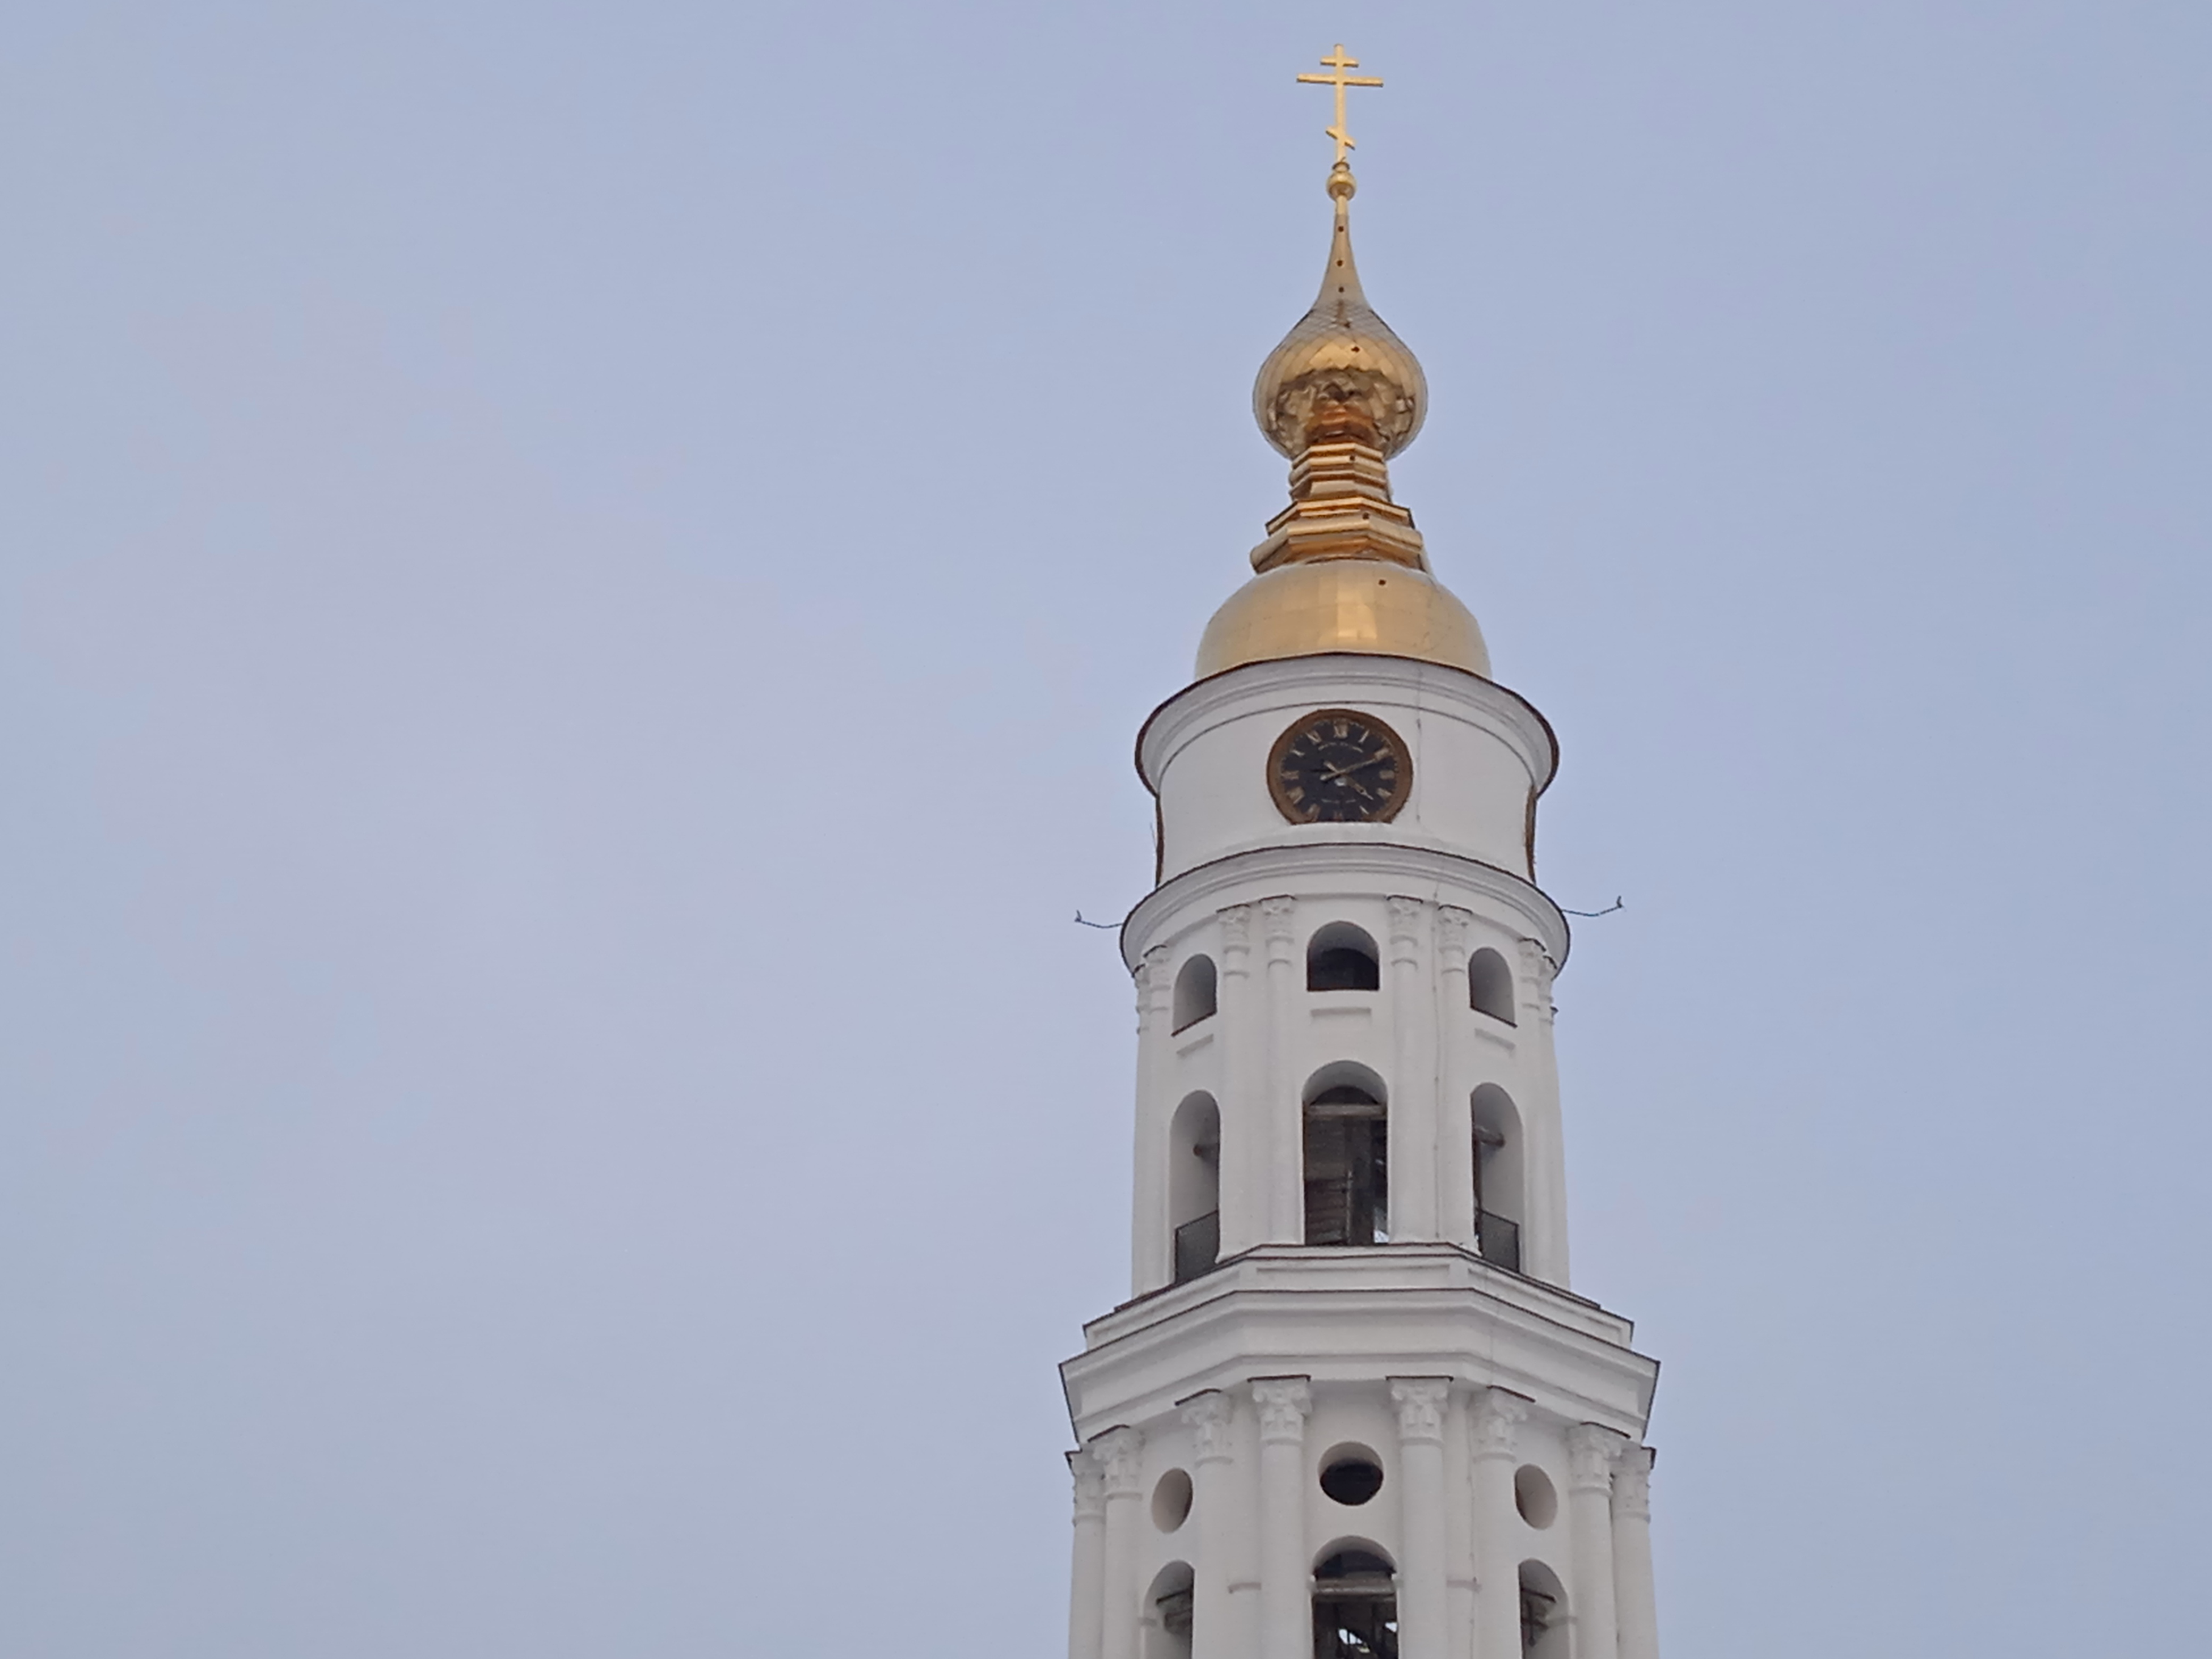 Туристам в Ивановской области разрешат подняться на колокольную с почти кремлевскими курантами